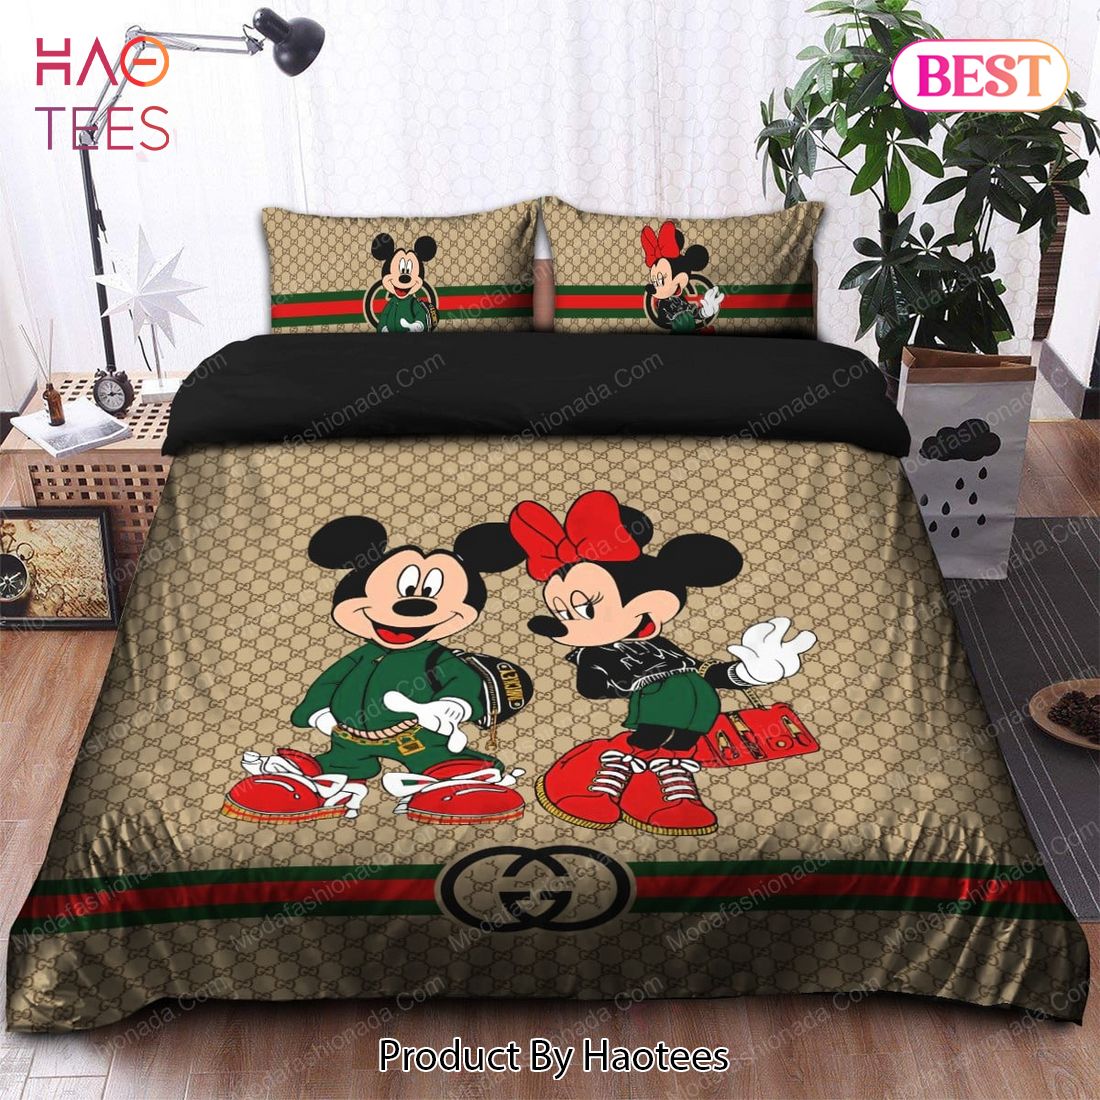 Buy Gucci Mickey Mouse Bedding Sets Bed Sets, Bedroom Sets, Comforter Sets,  Duvet Cover, Bedspread